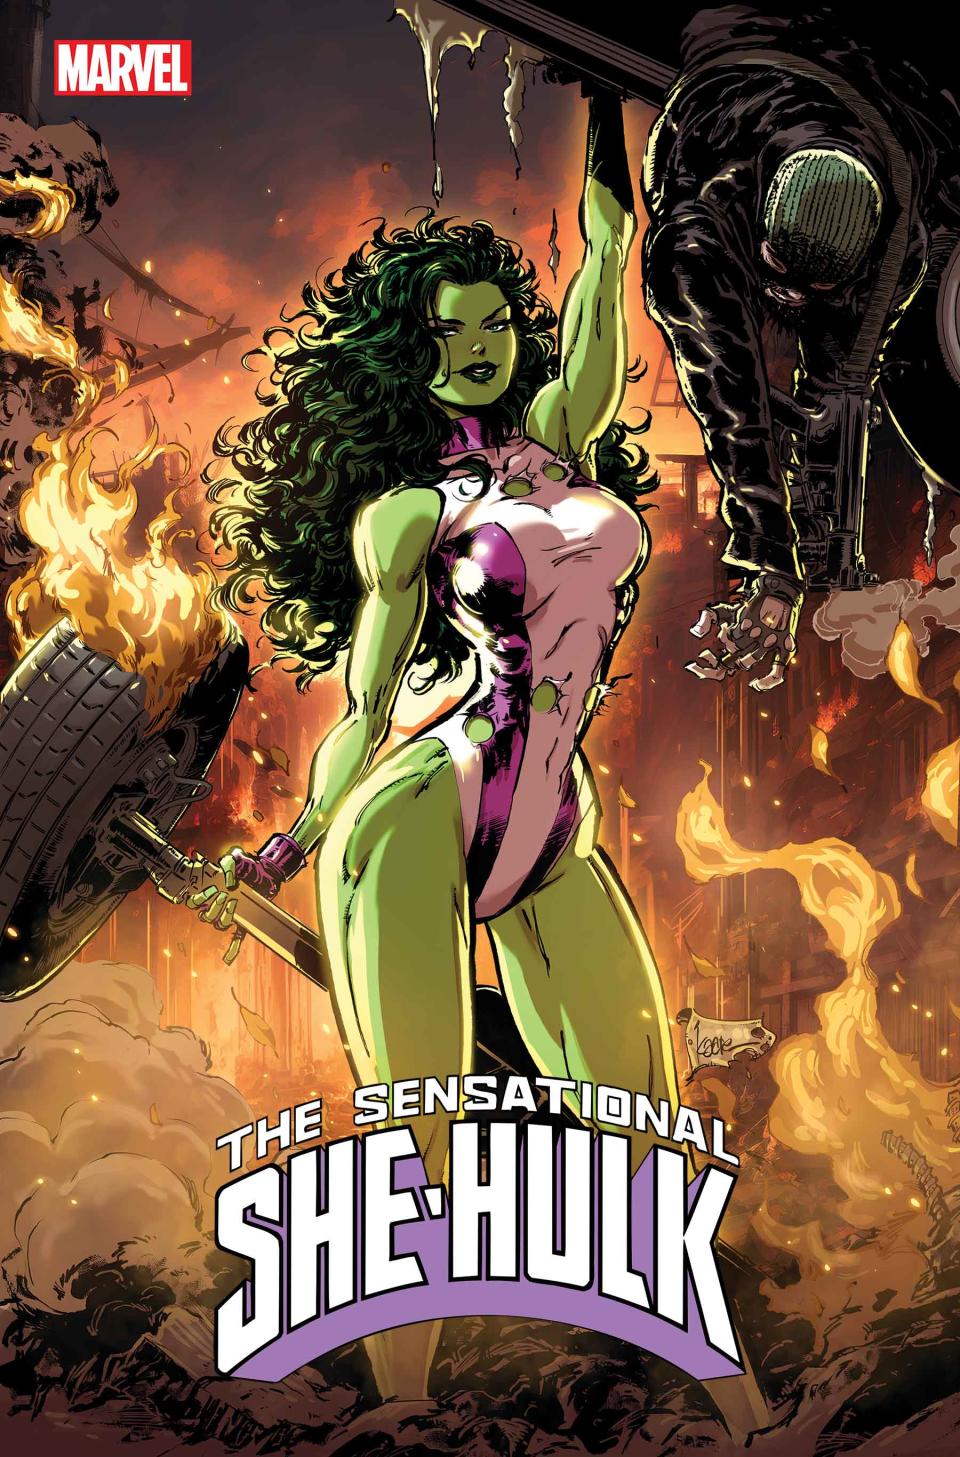 Art from Sensational She-Hulk.